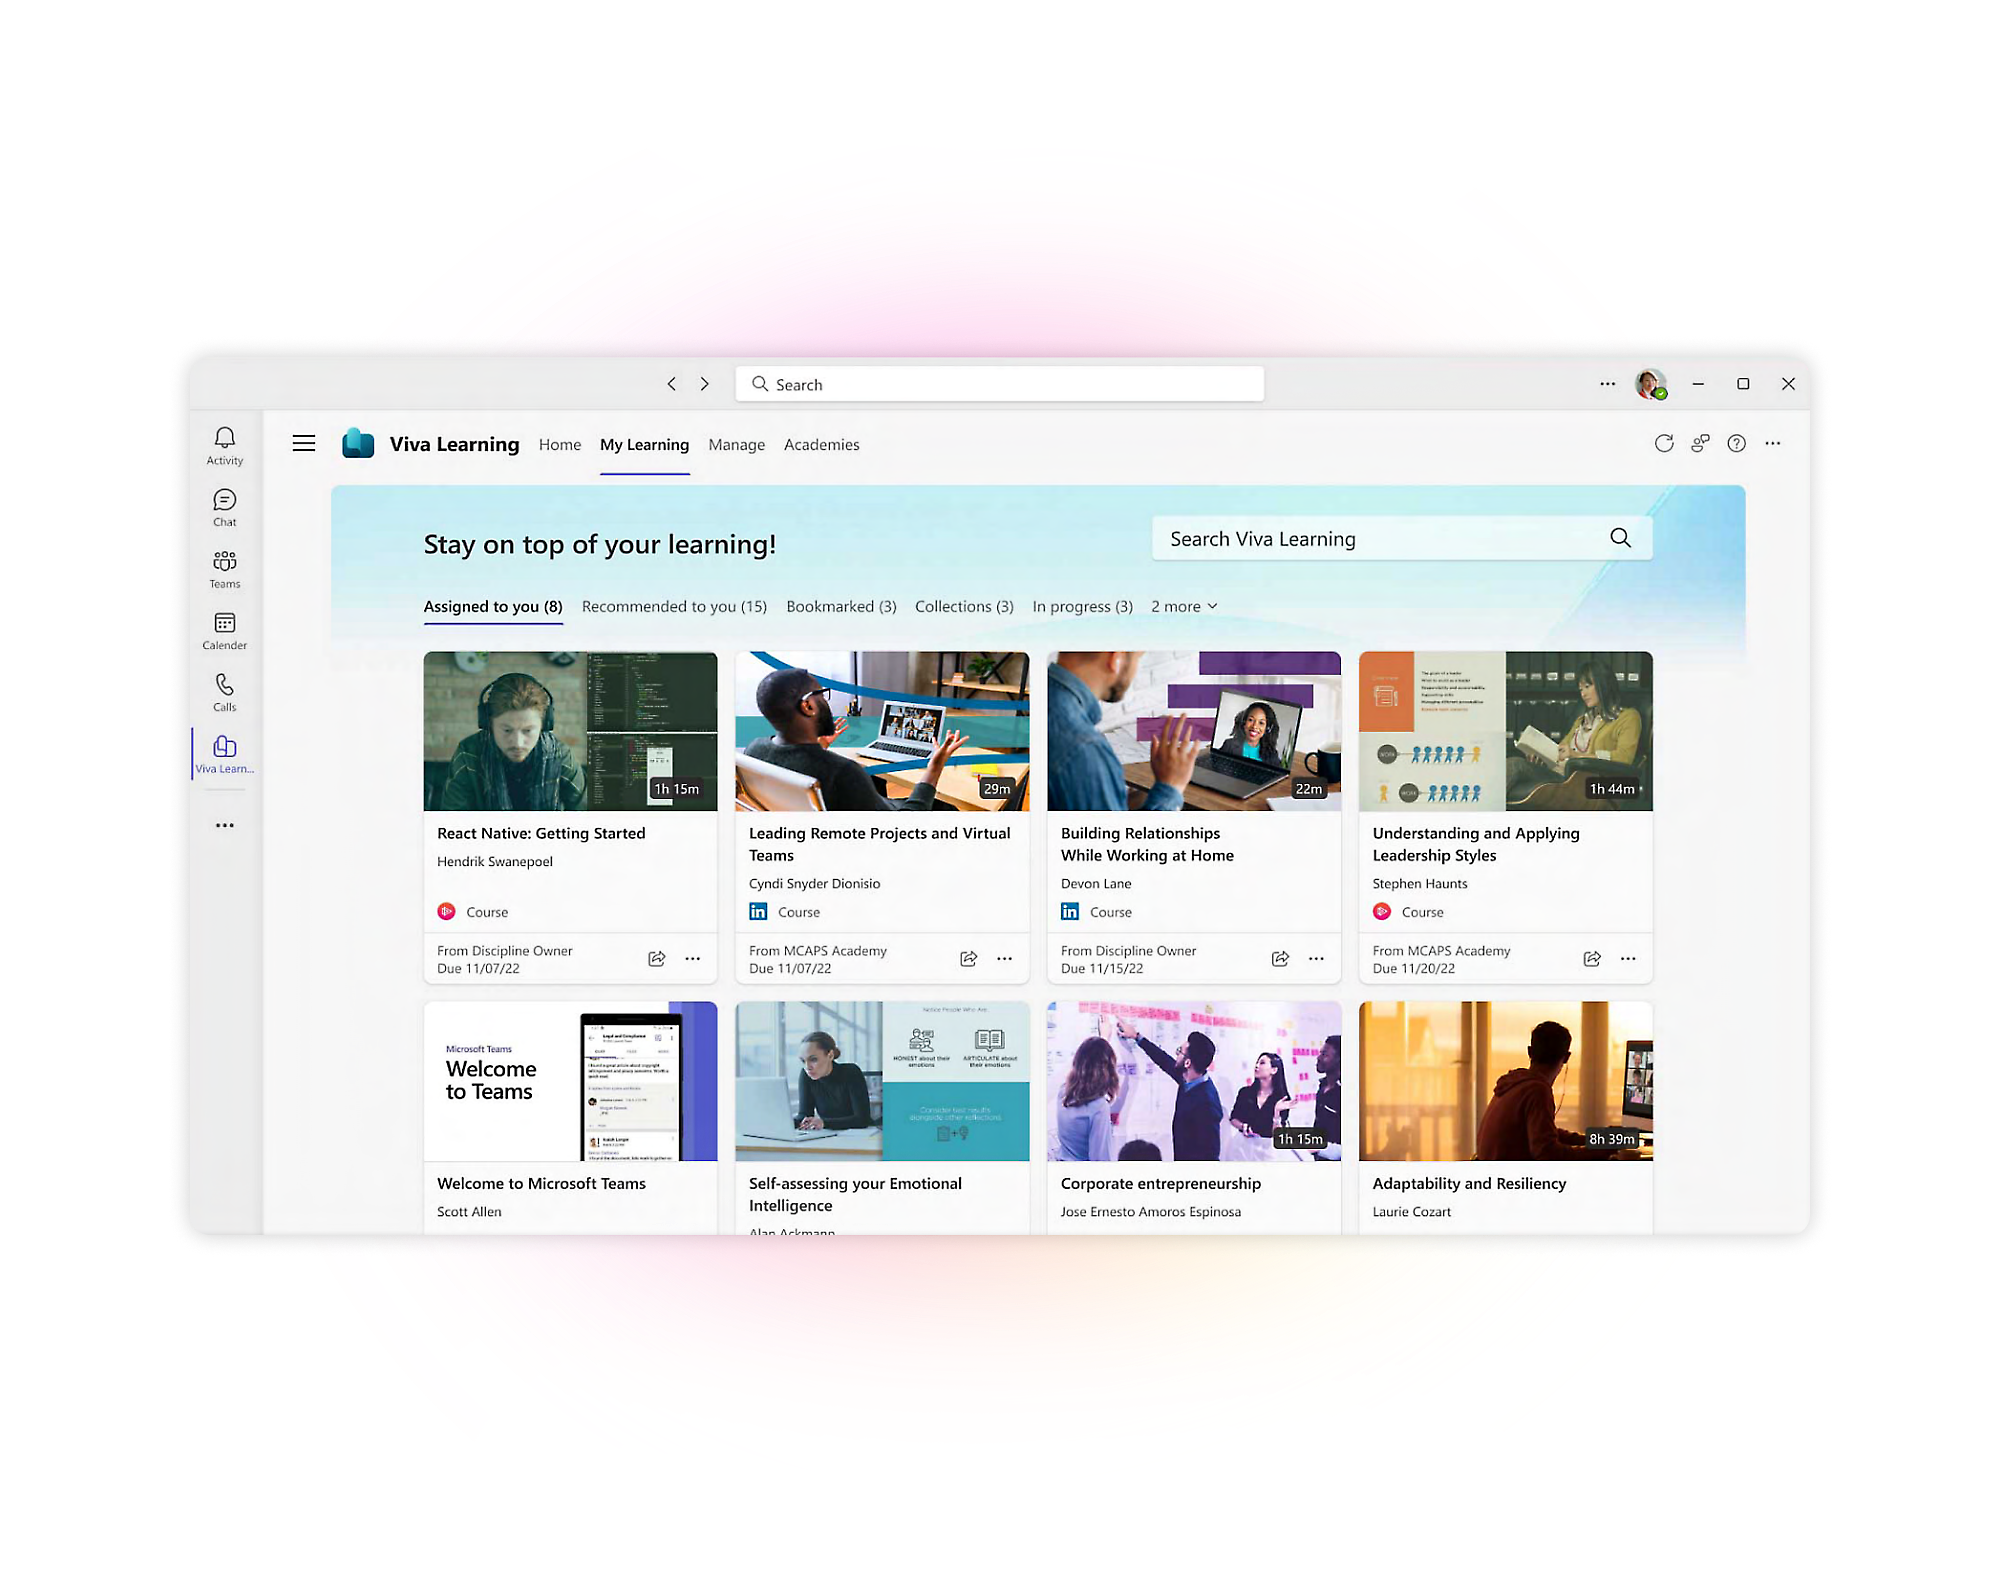 لقطة شاشة لواجهة ويب viva Learning تعرض دورات تعليمية متنوعة ووحدات تعليمية حول مهارات الكمبيوتر 